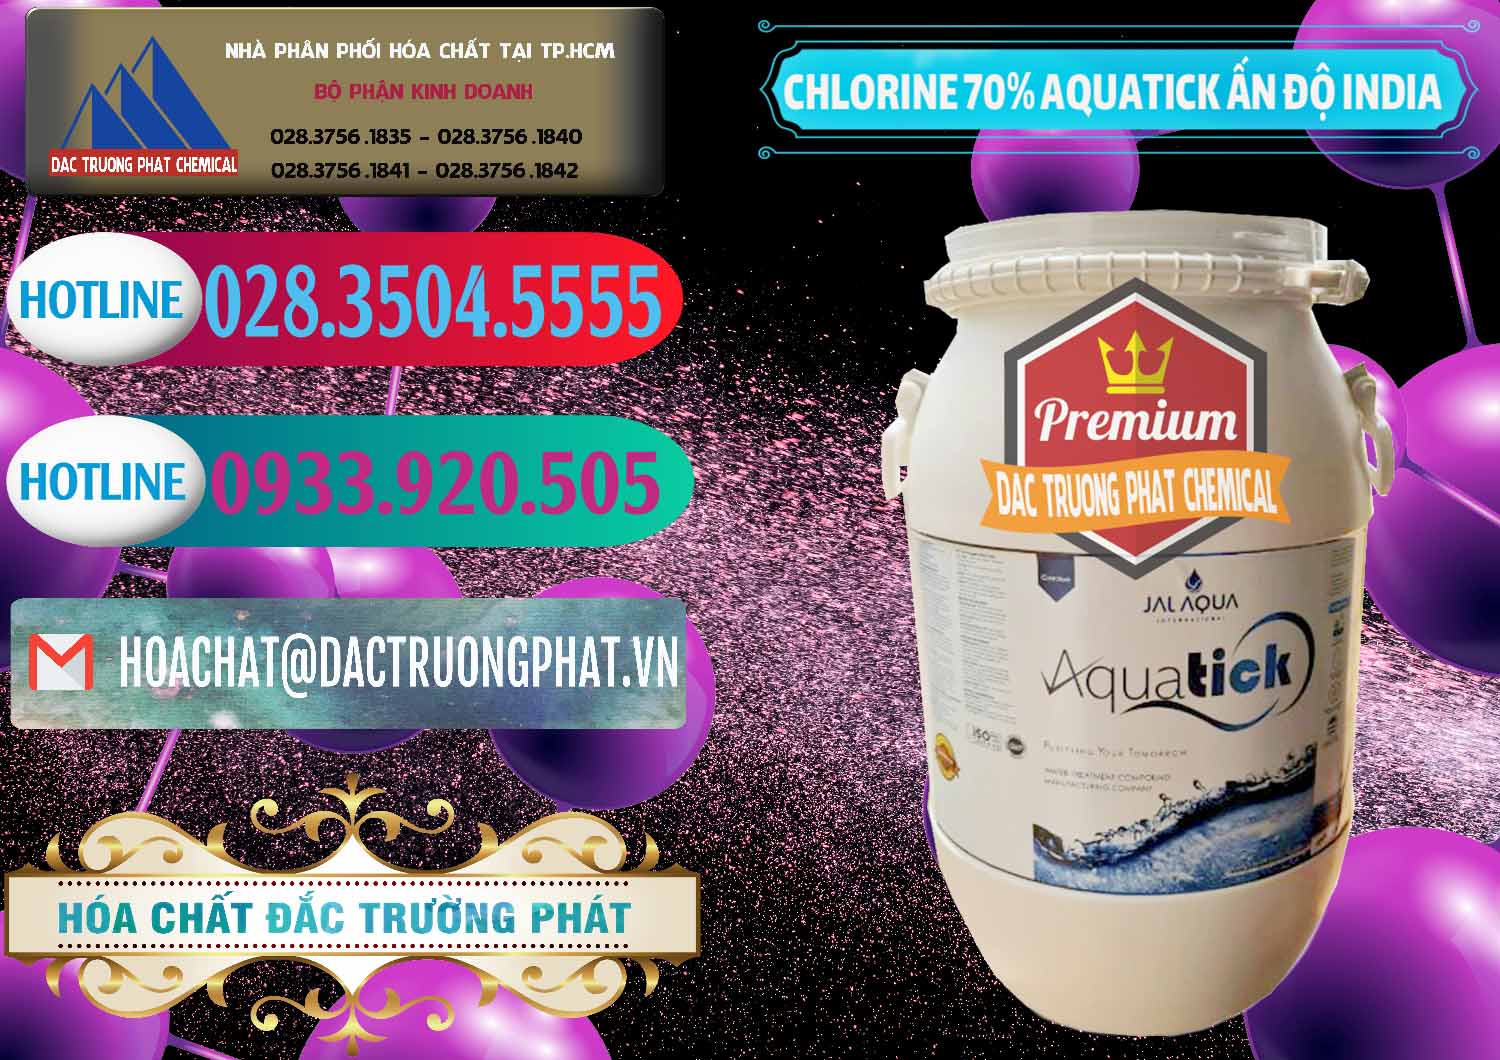 Chuyên nhập khẩu và bán Chlorine – Clorin 70% Aquatick Jal Aqua Ấn Độ India - 0215 - Công ty nhập khẩu & phân phối hóa chất tại TP.HCM - truongphat.vn